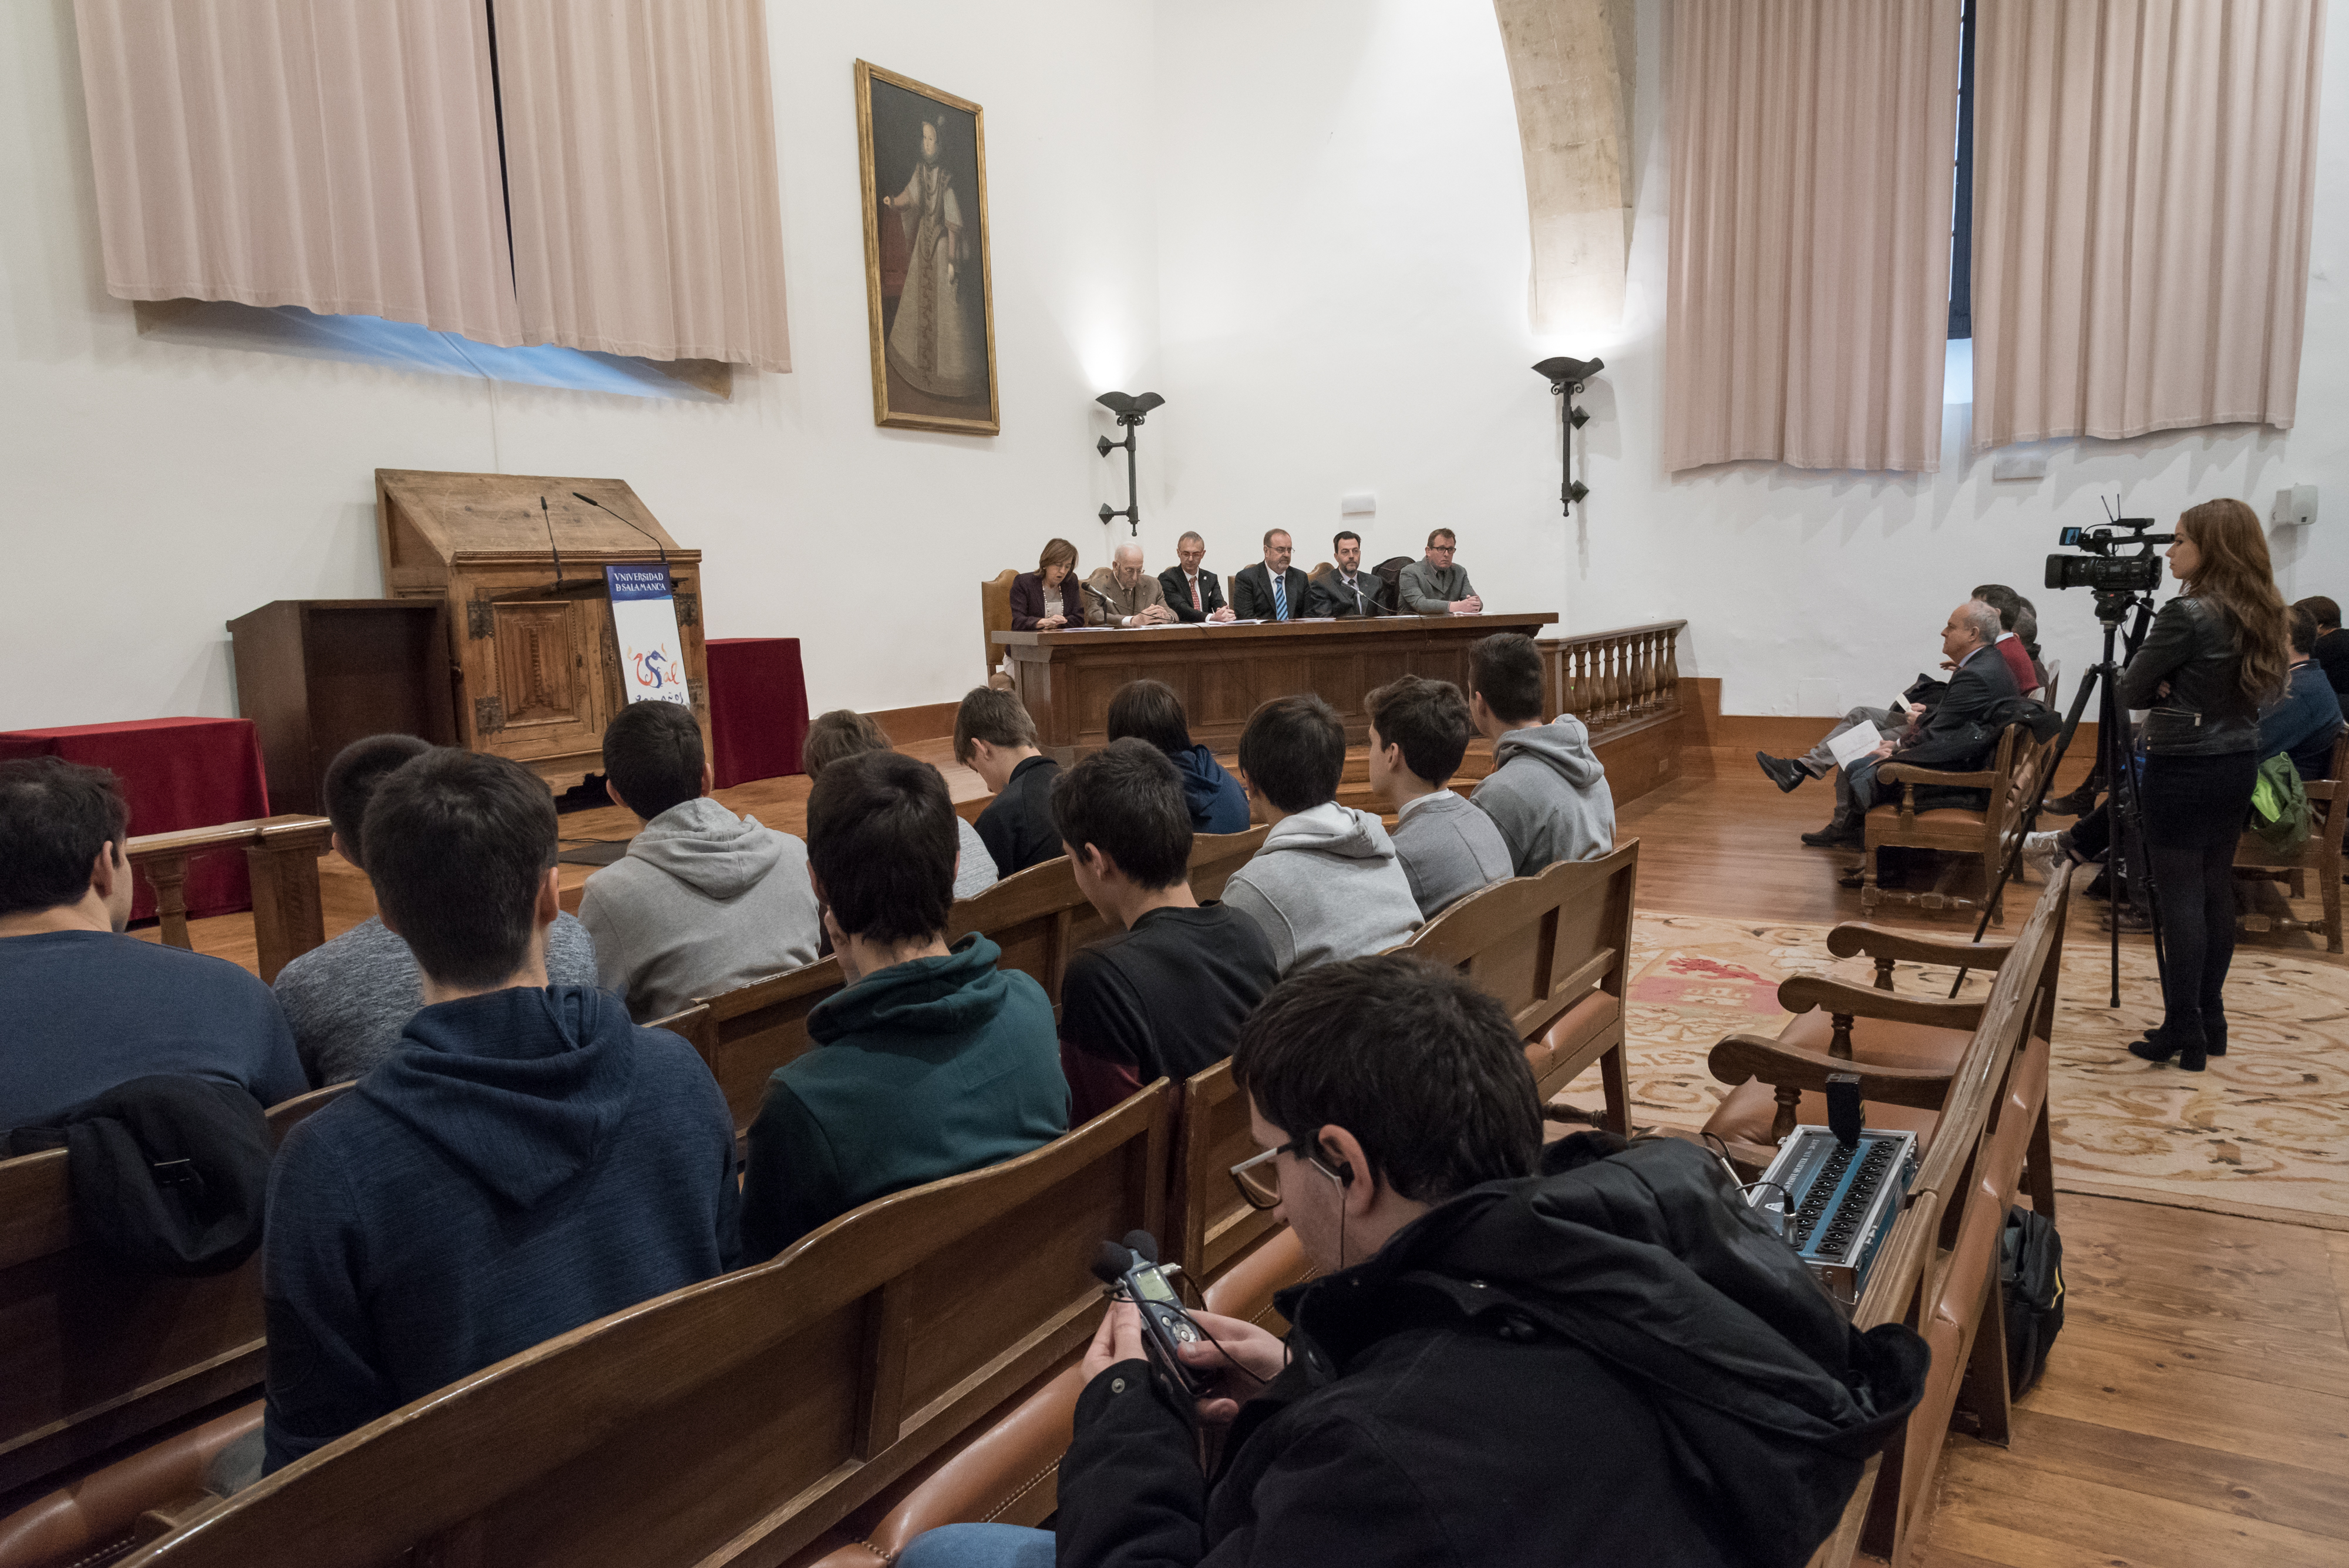 La Universidad de Salamanca acoge la final regional de las LIV Olimpiadas Matemáticas y la entrega de diplomas a los finalistas